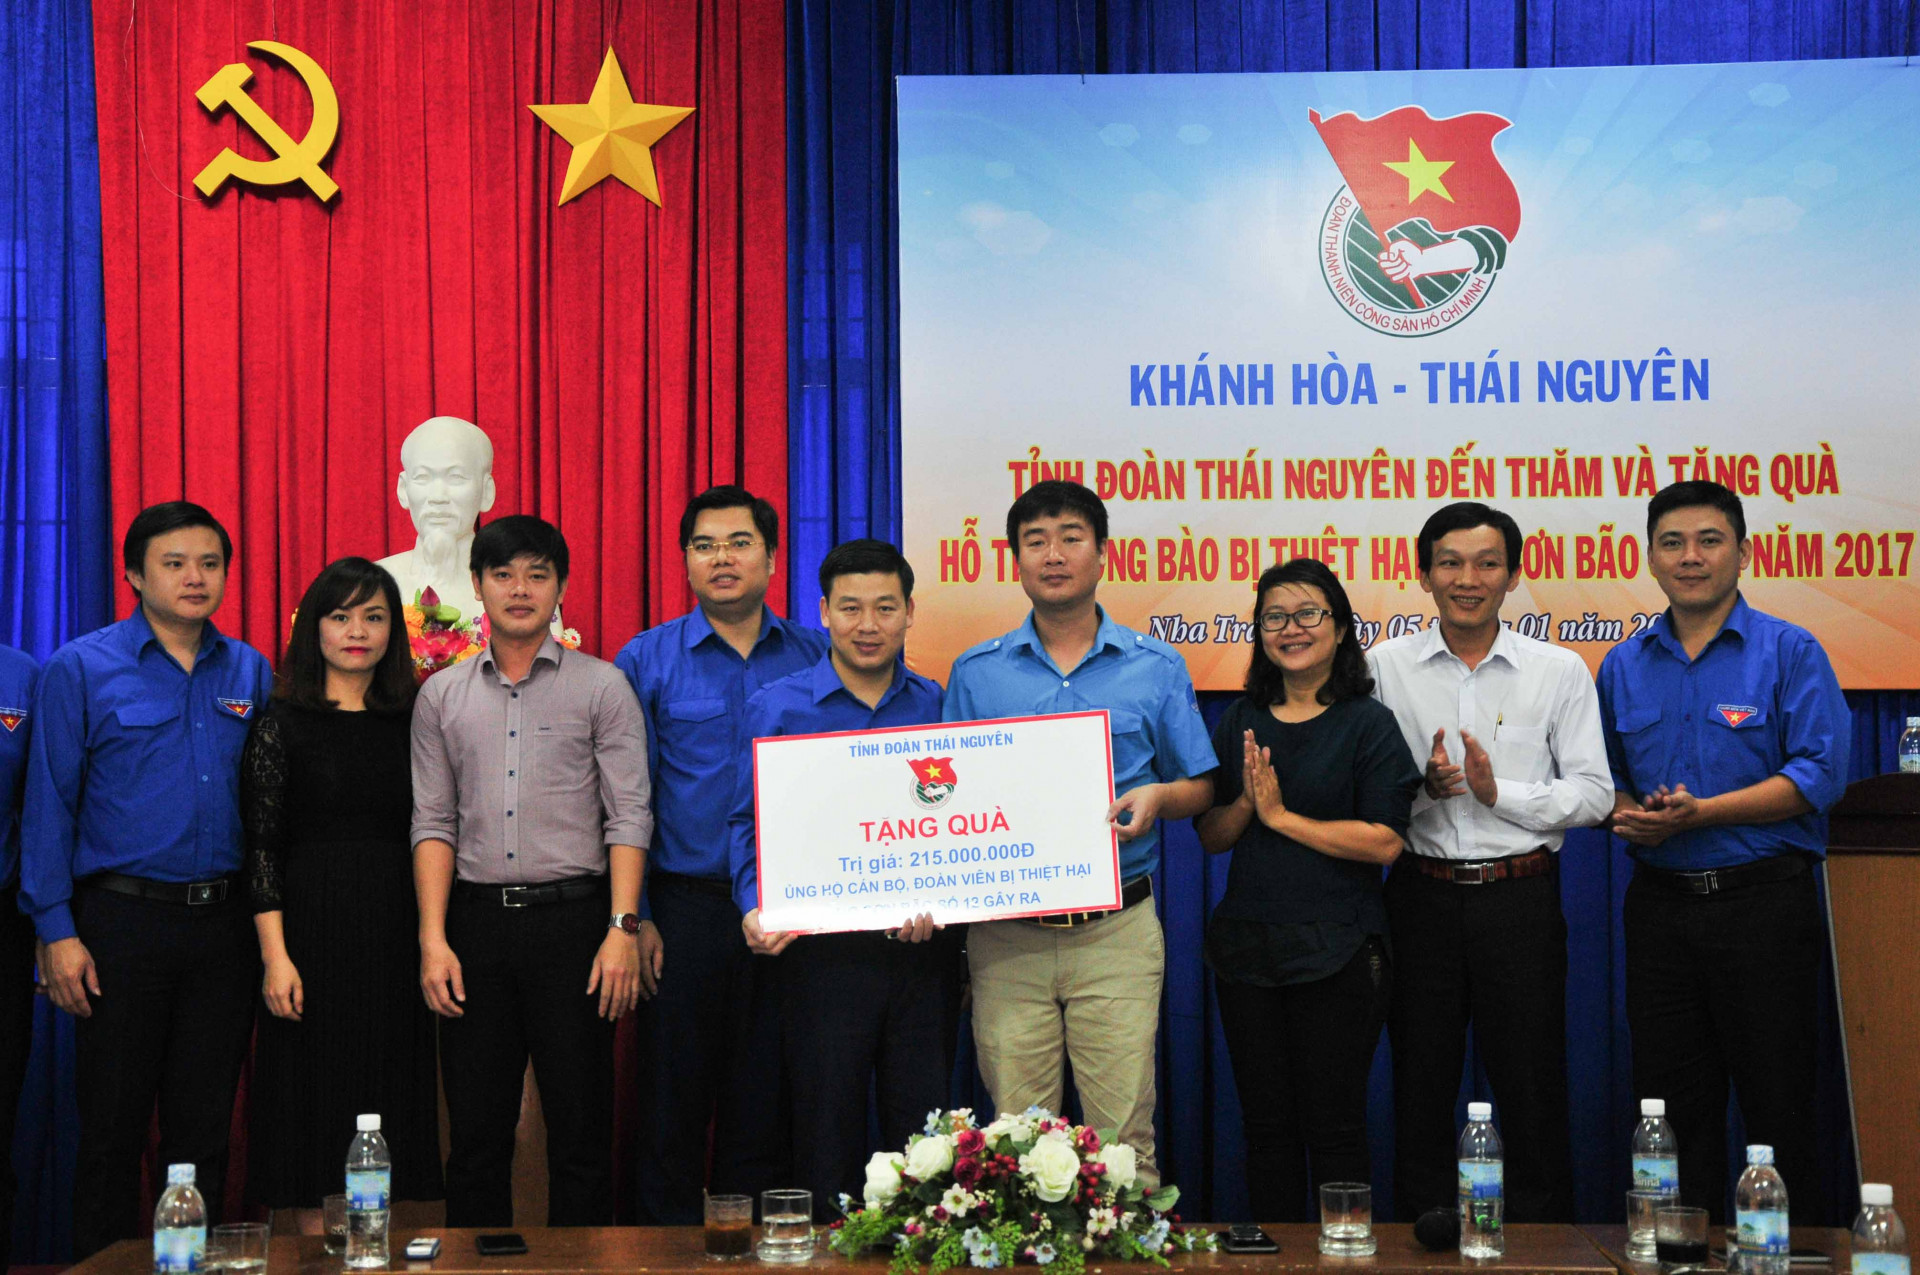 Tỉnh đoàn Thái Nguyên trao biểu trưng tiền hỗ trợ cho Tỉnh đoàn Khánh Hoà